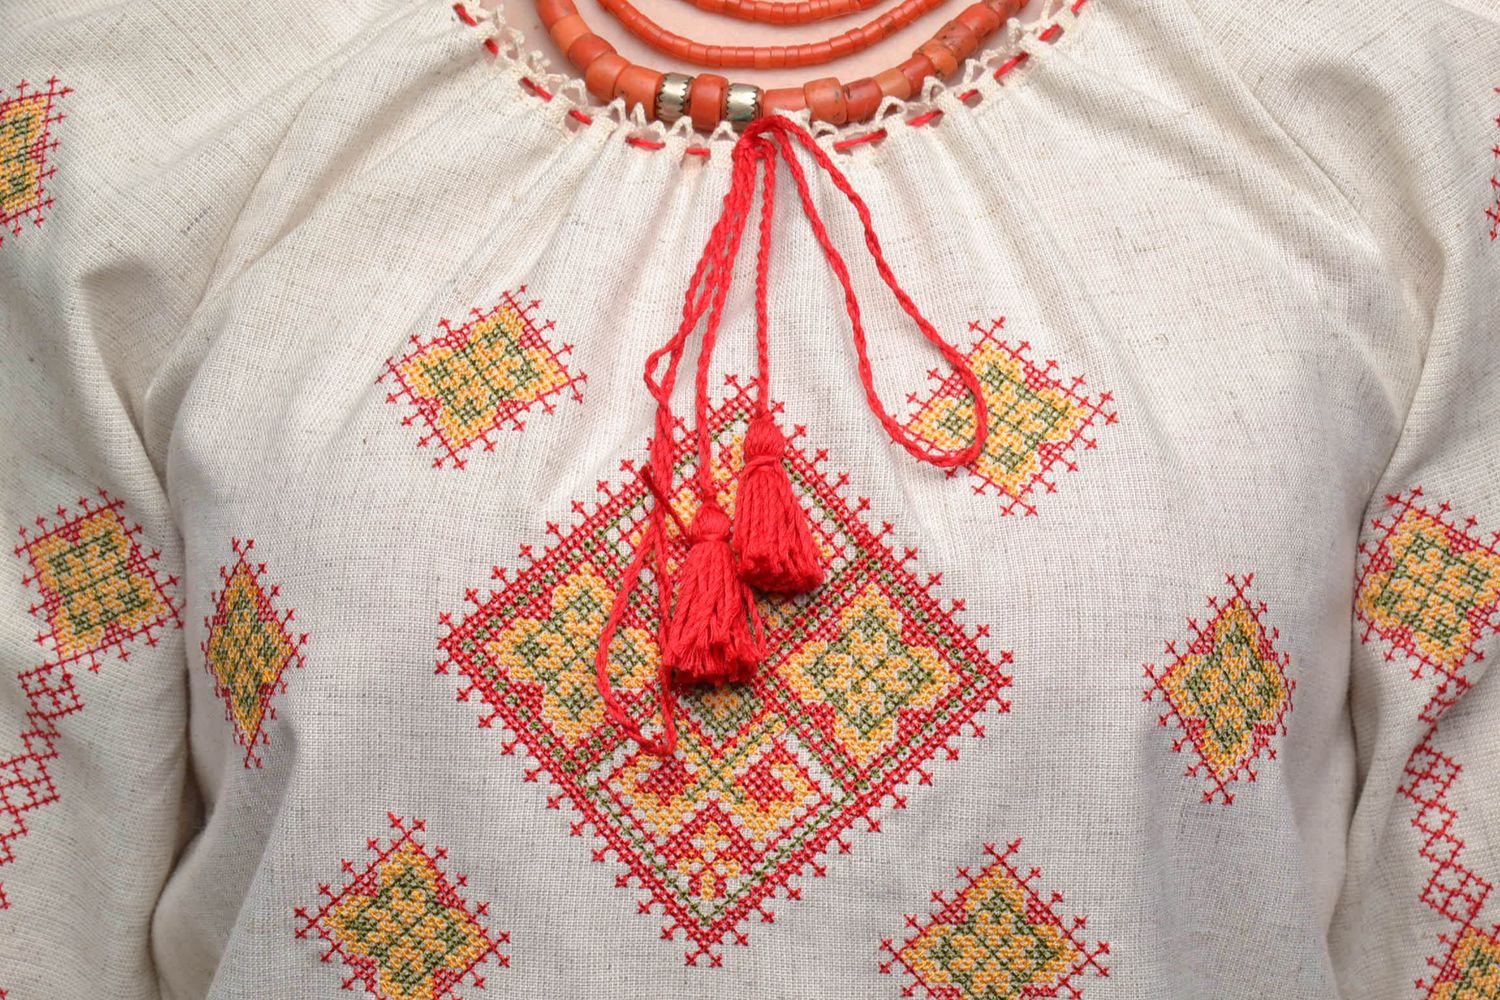 Cross stitched women's shirt photo 3